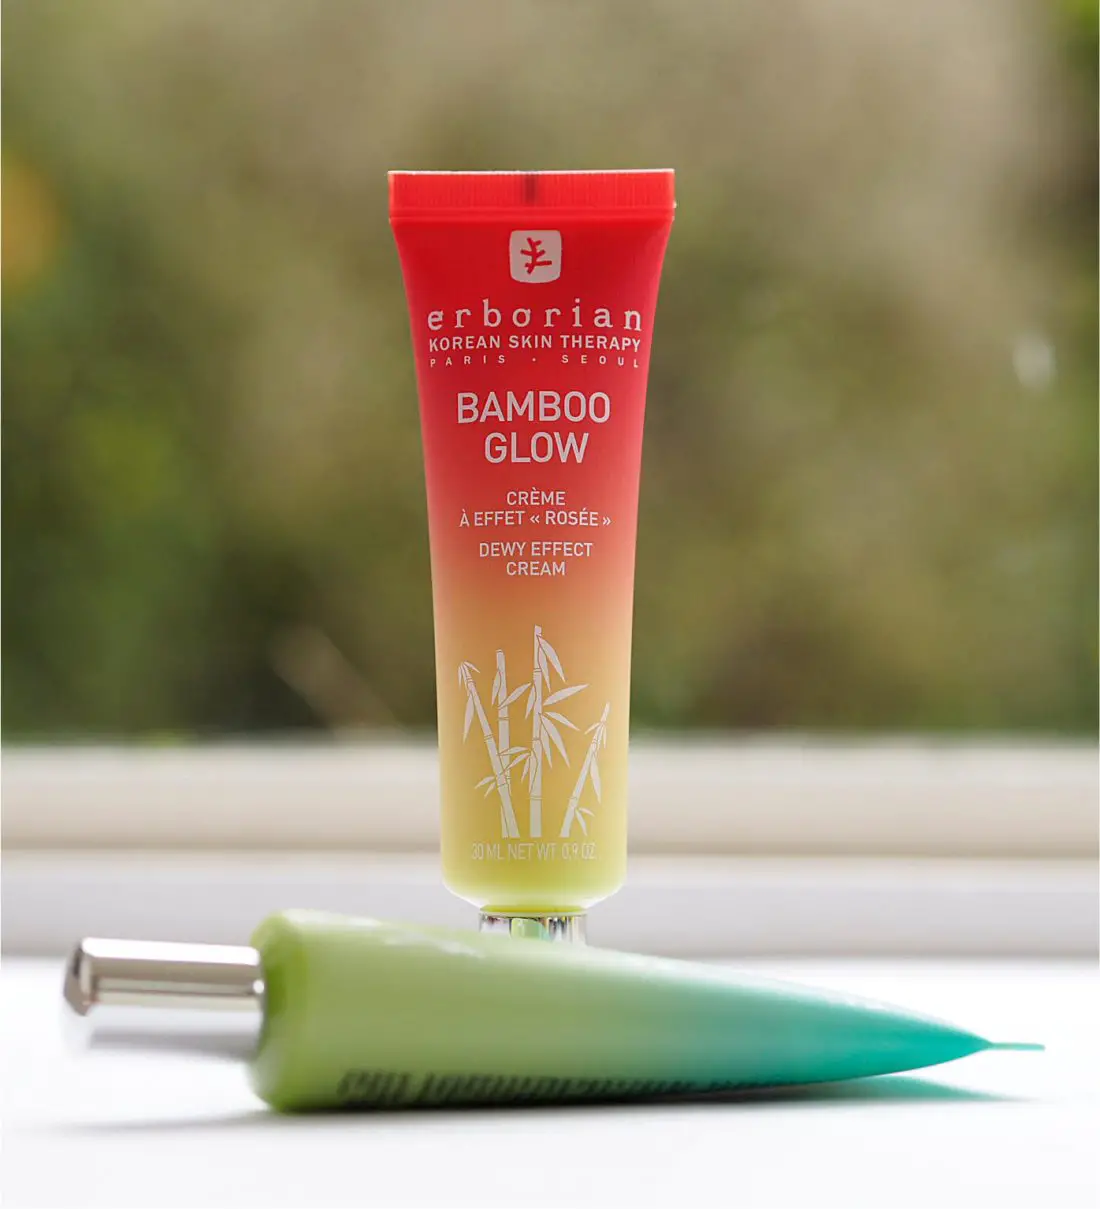 Cordelia hoffelijkheid Wet en regelgeving Erborian Bamboo Glow | British Beauty Blogger